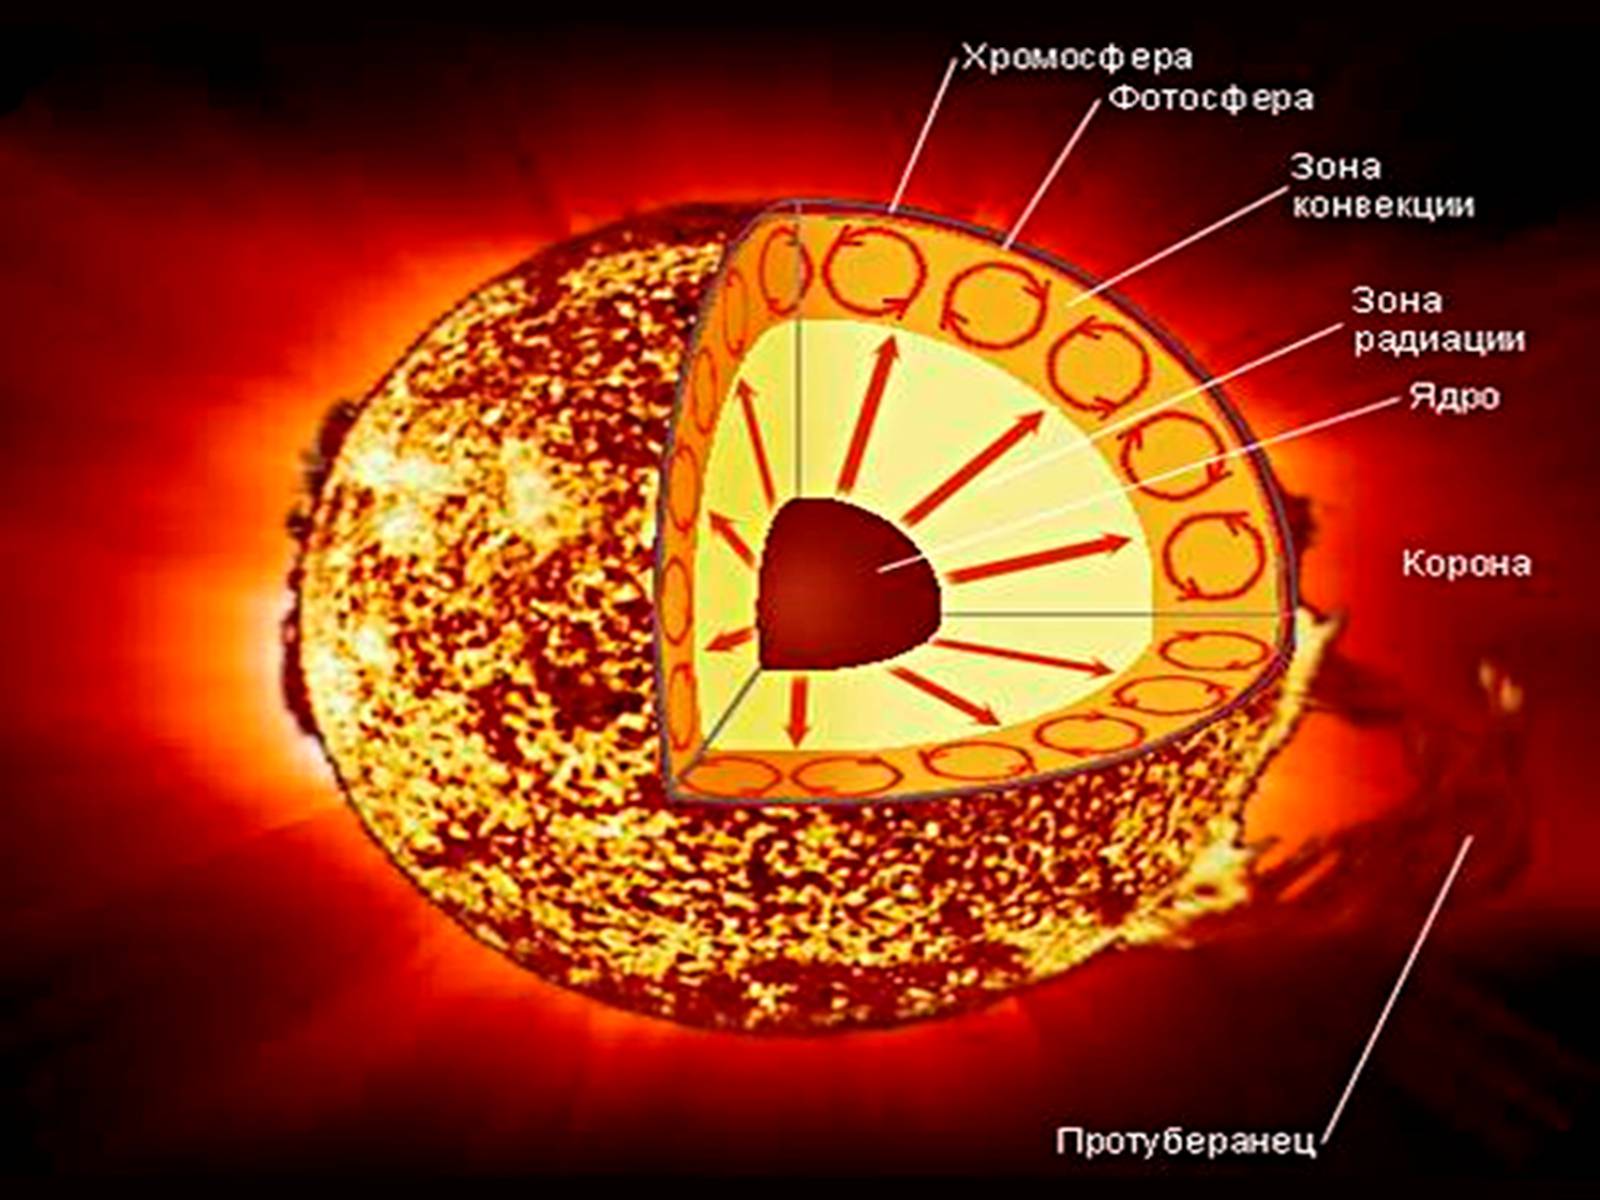 Солнечная атмосфера корона. Строение атмосферы солнца Фотосфера хромосфера Солнечная корона. Строение солнца хромосфера Фотосфера. Внутреннее строение солнца Фотосфера. Строение солнца схема.